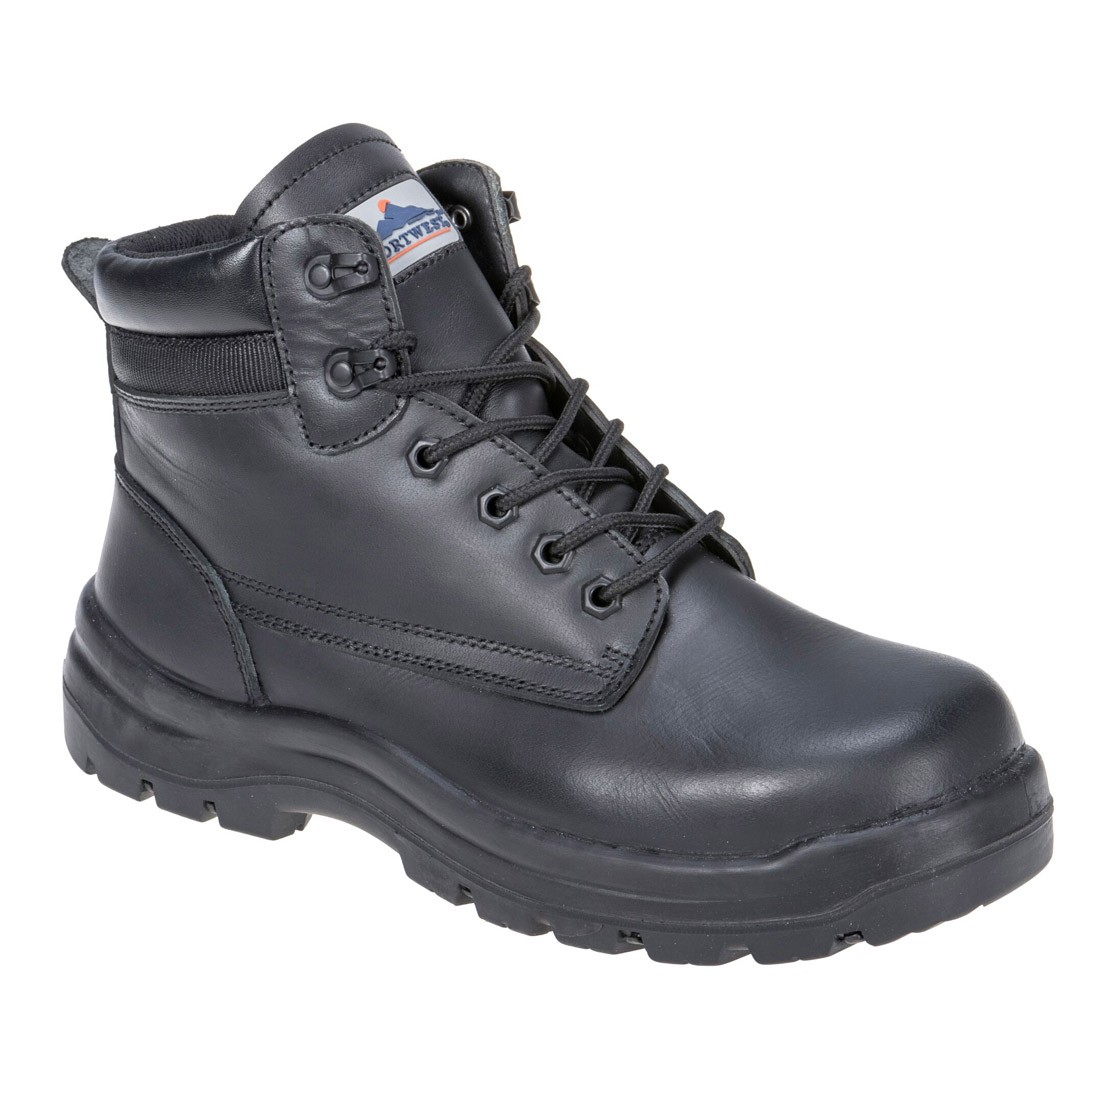 Foyle Safety Boot S3 HRO CI HI FO - Footwear